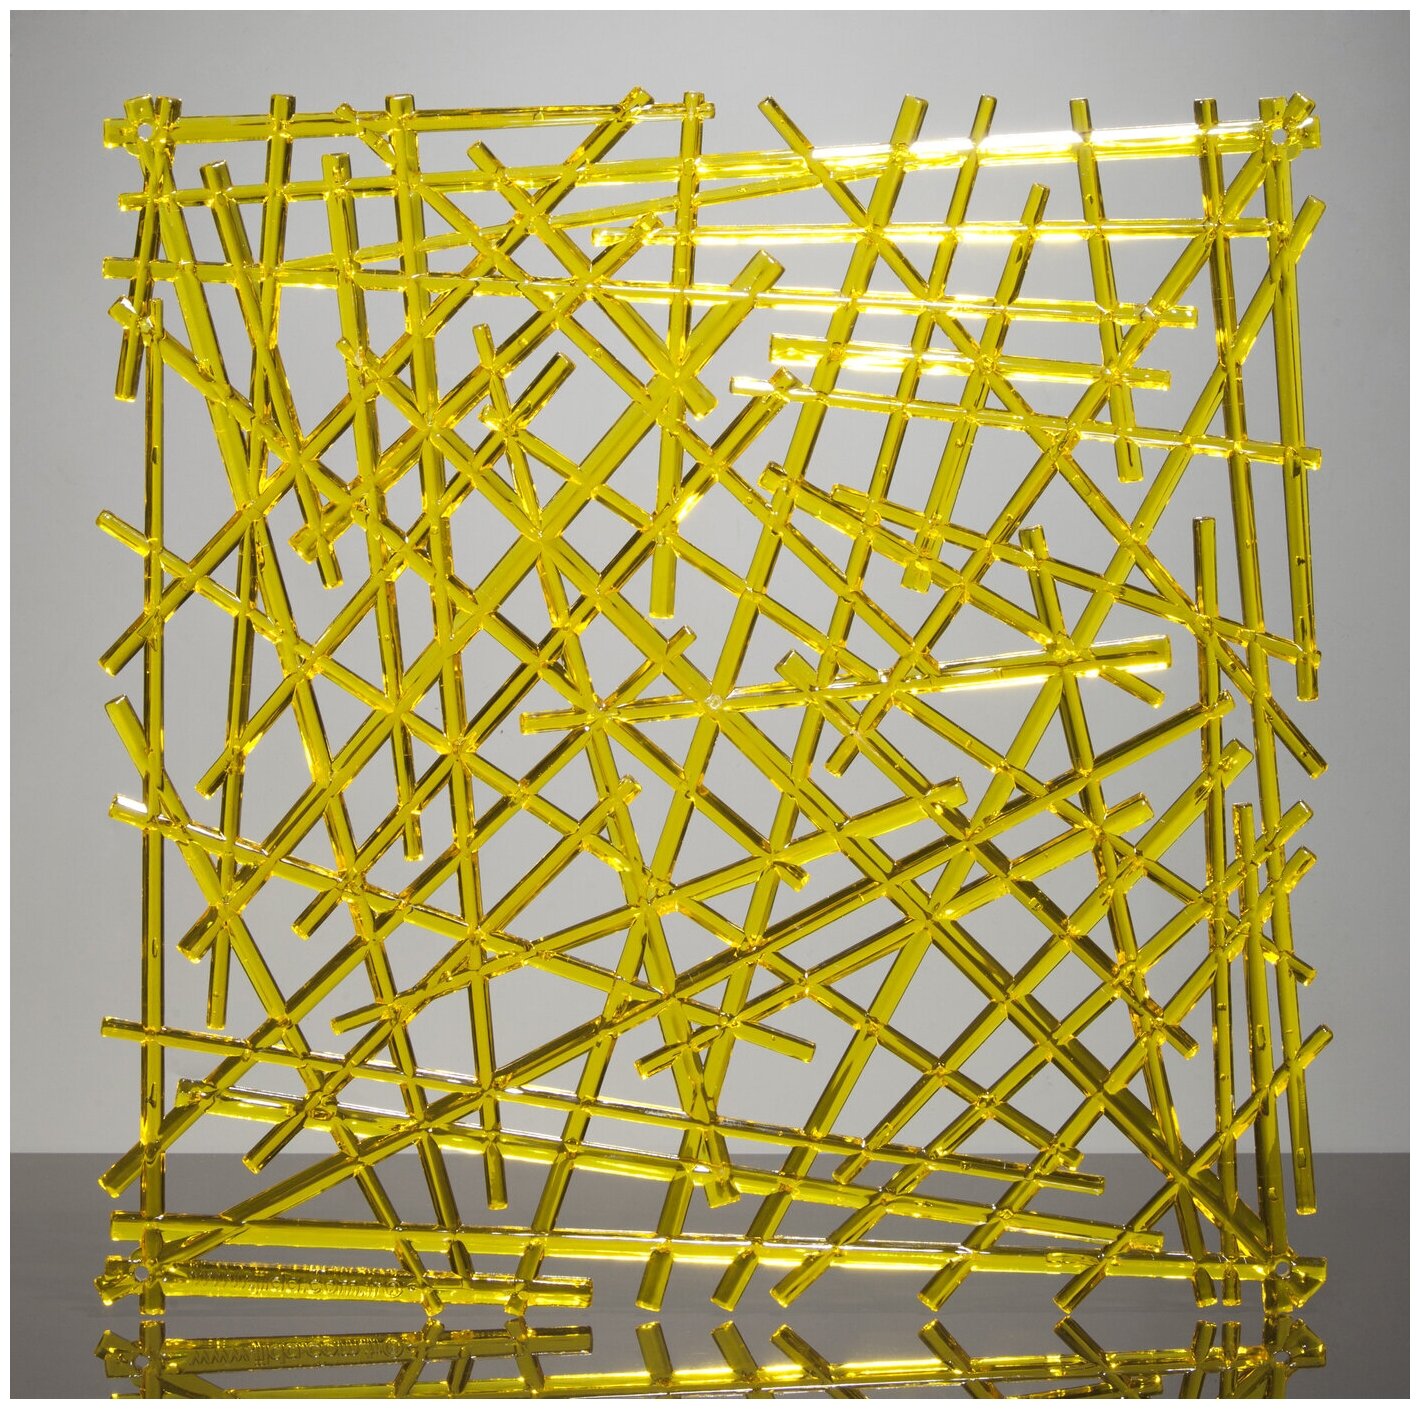 Комплект декоративных панелей из 4 шт. Jilda, коллекция "Хворост", 29х29 см, материал полистирол, цвет - желтый